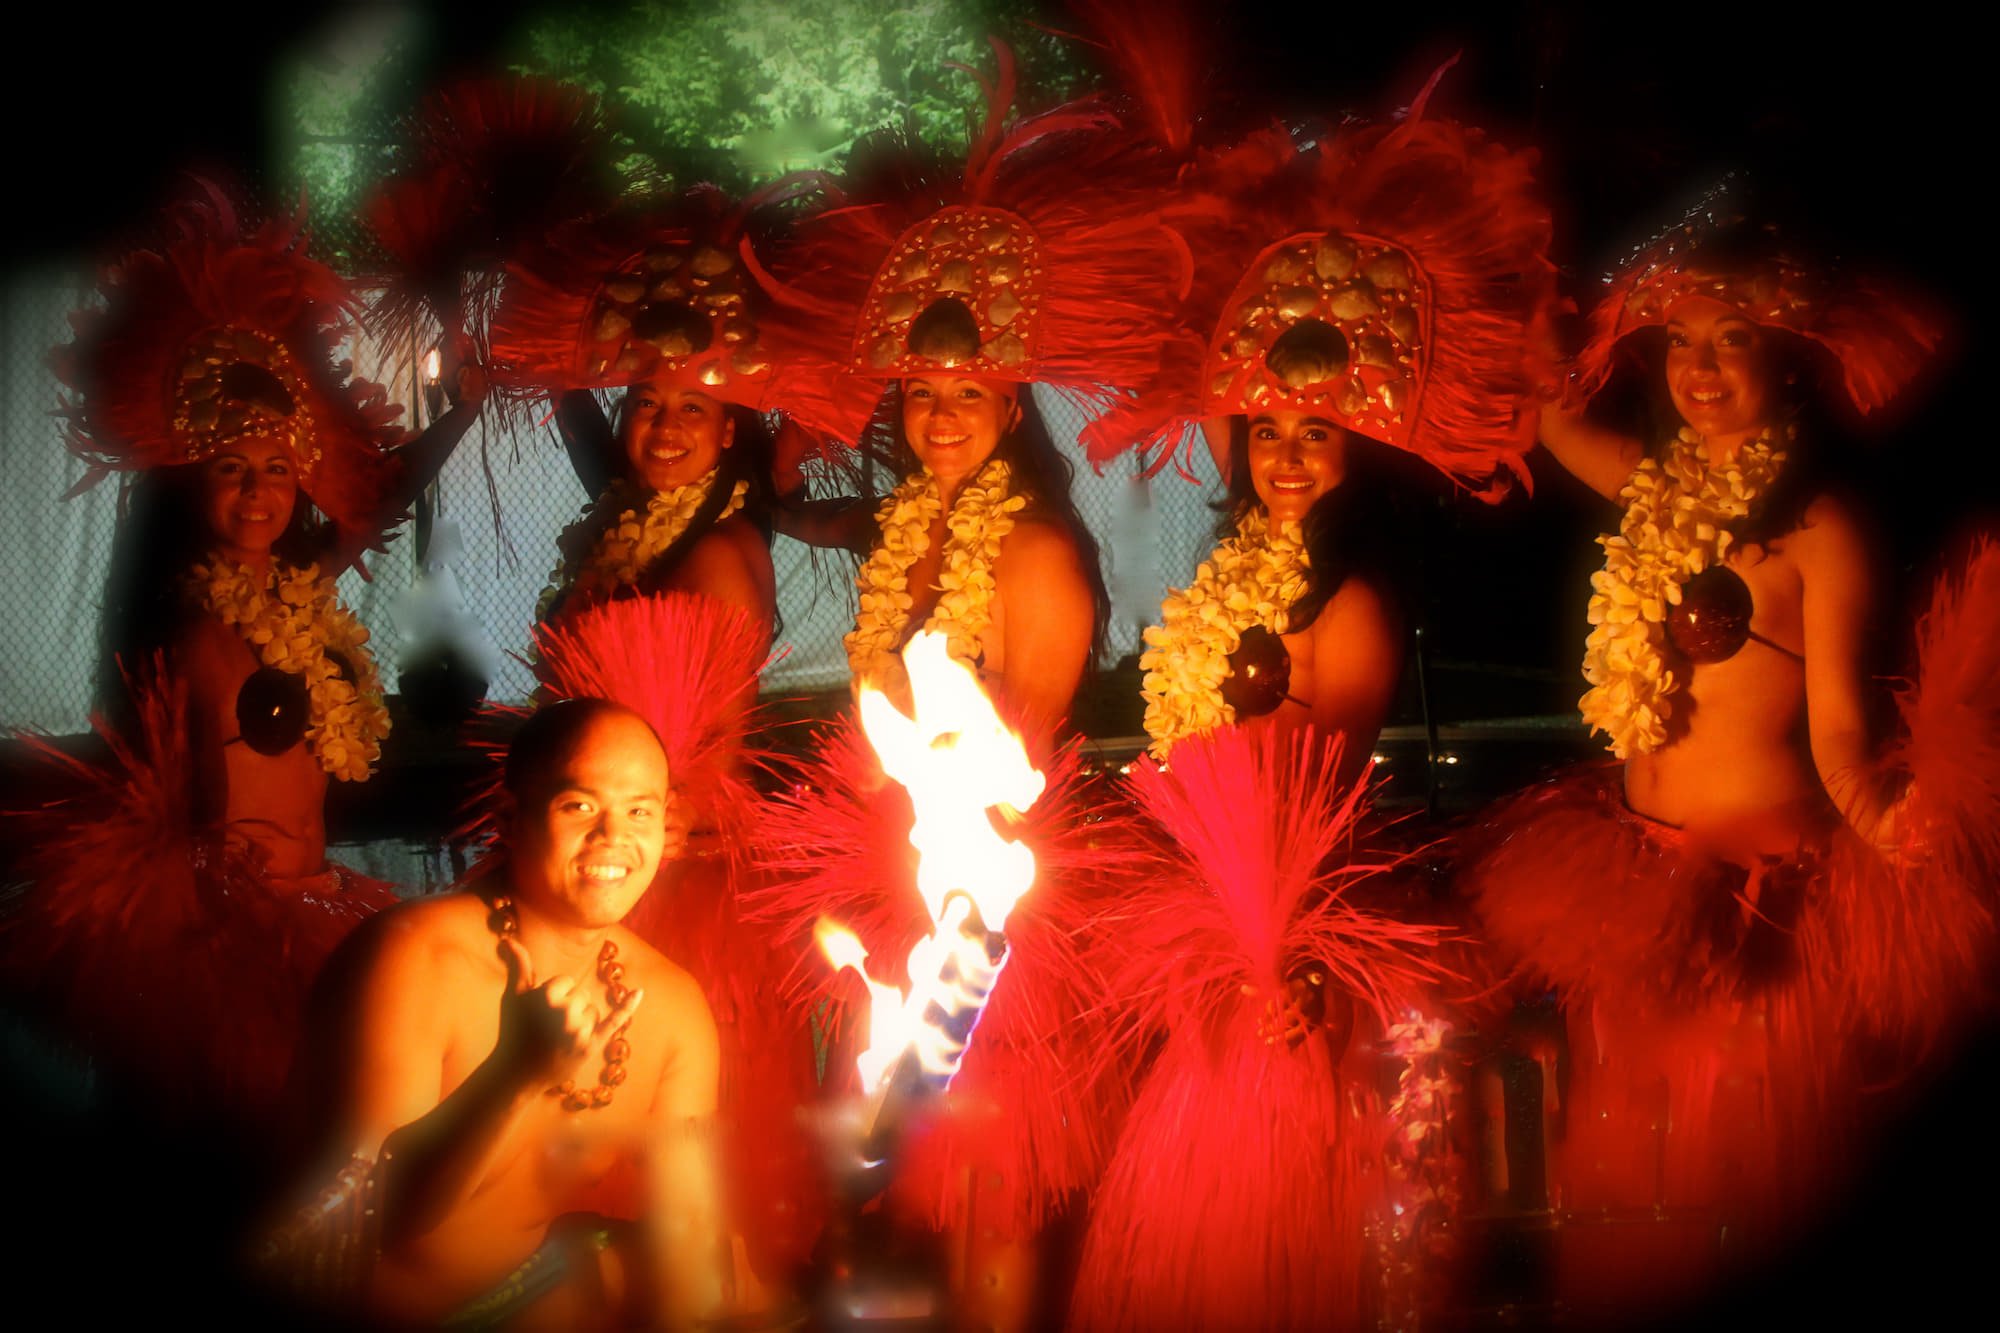 Hawaiian Dancers and Fire Performer at a Niagara Falls Party.jpeg